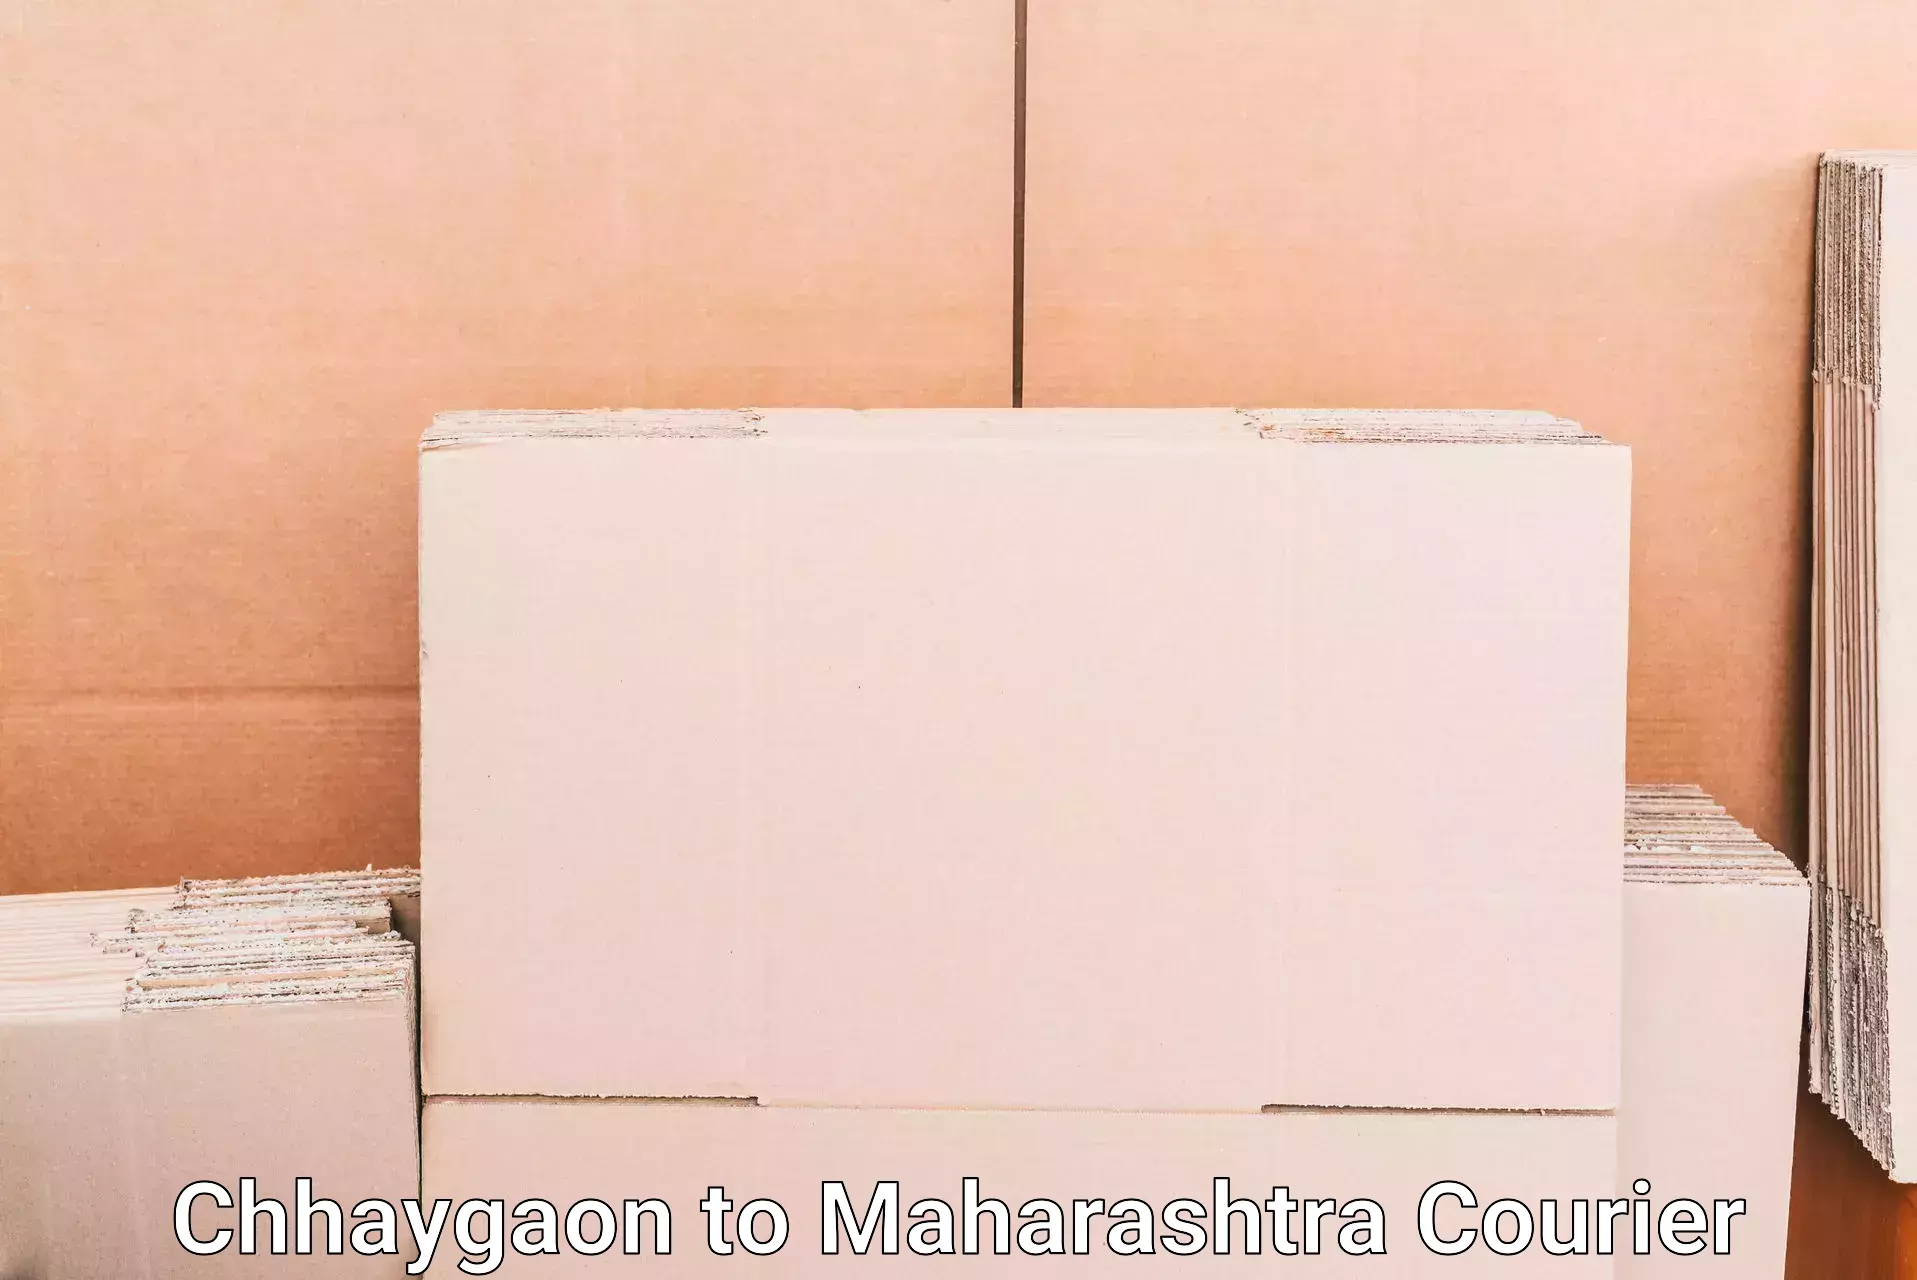 Luggage delivery optimization Chhaygaon to Nashik